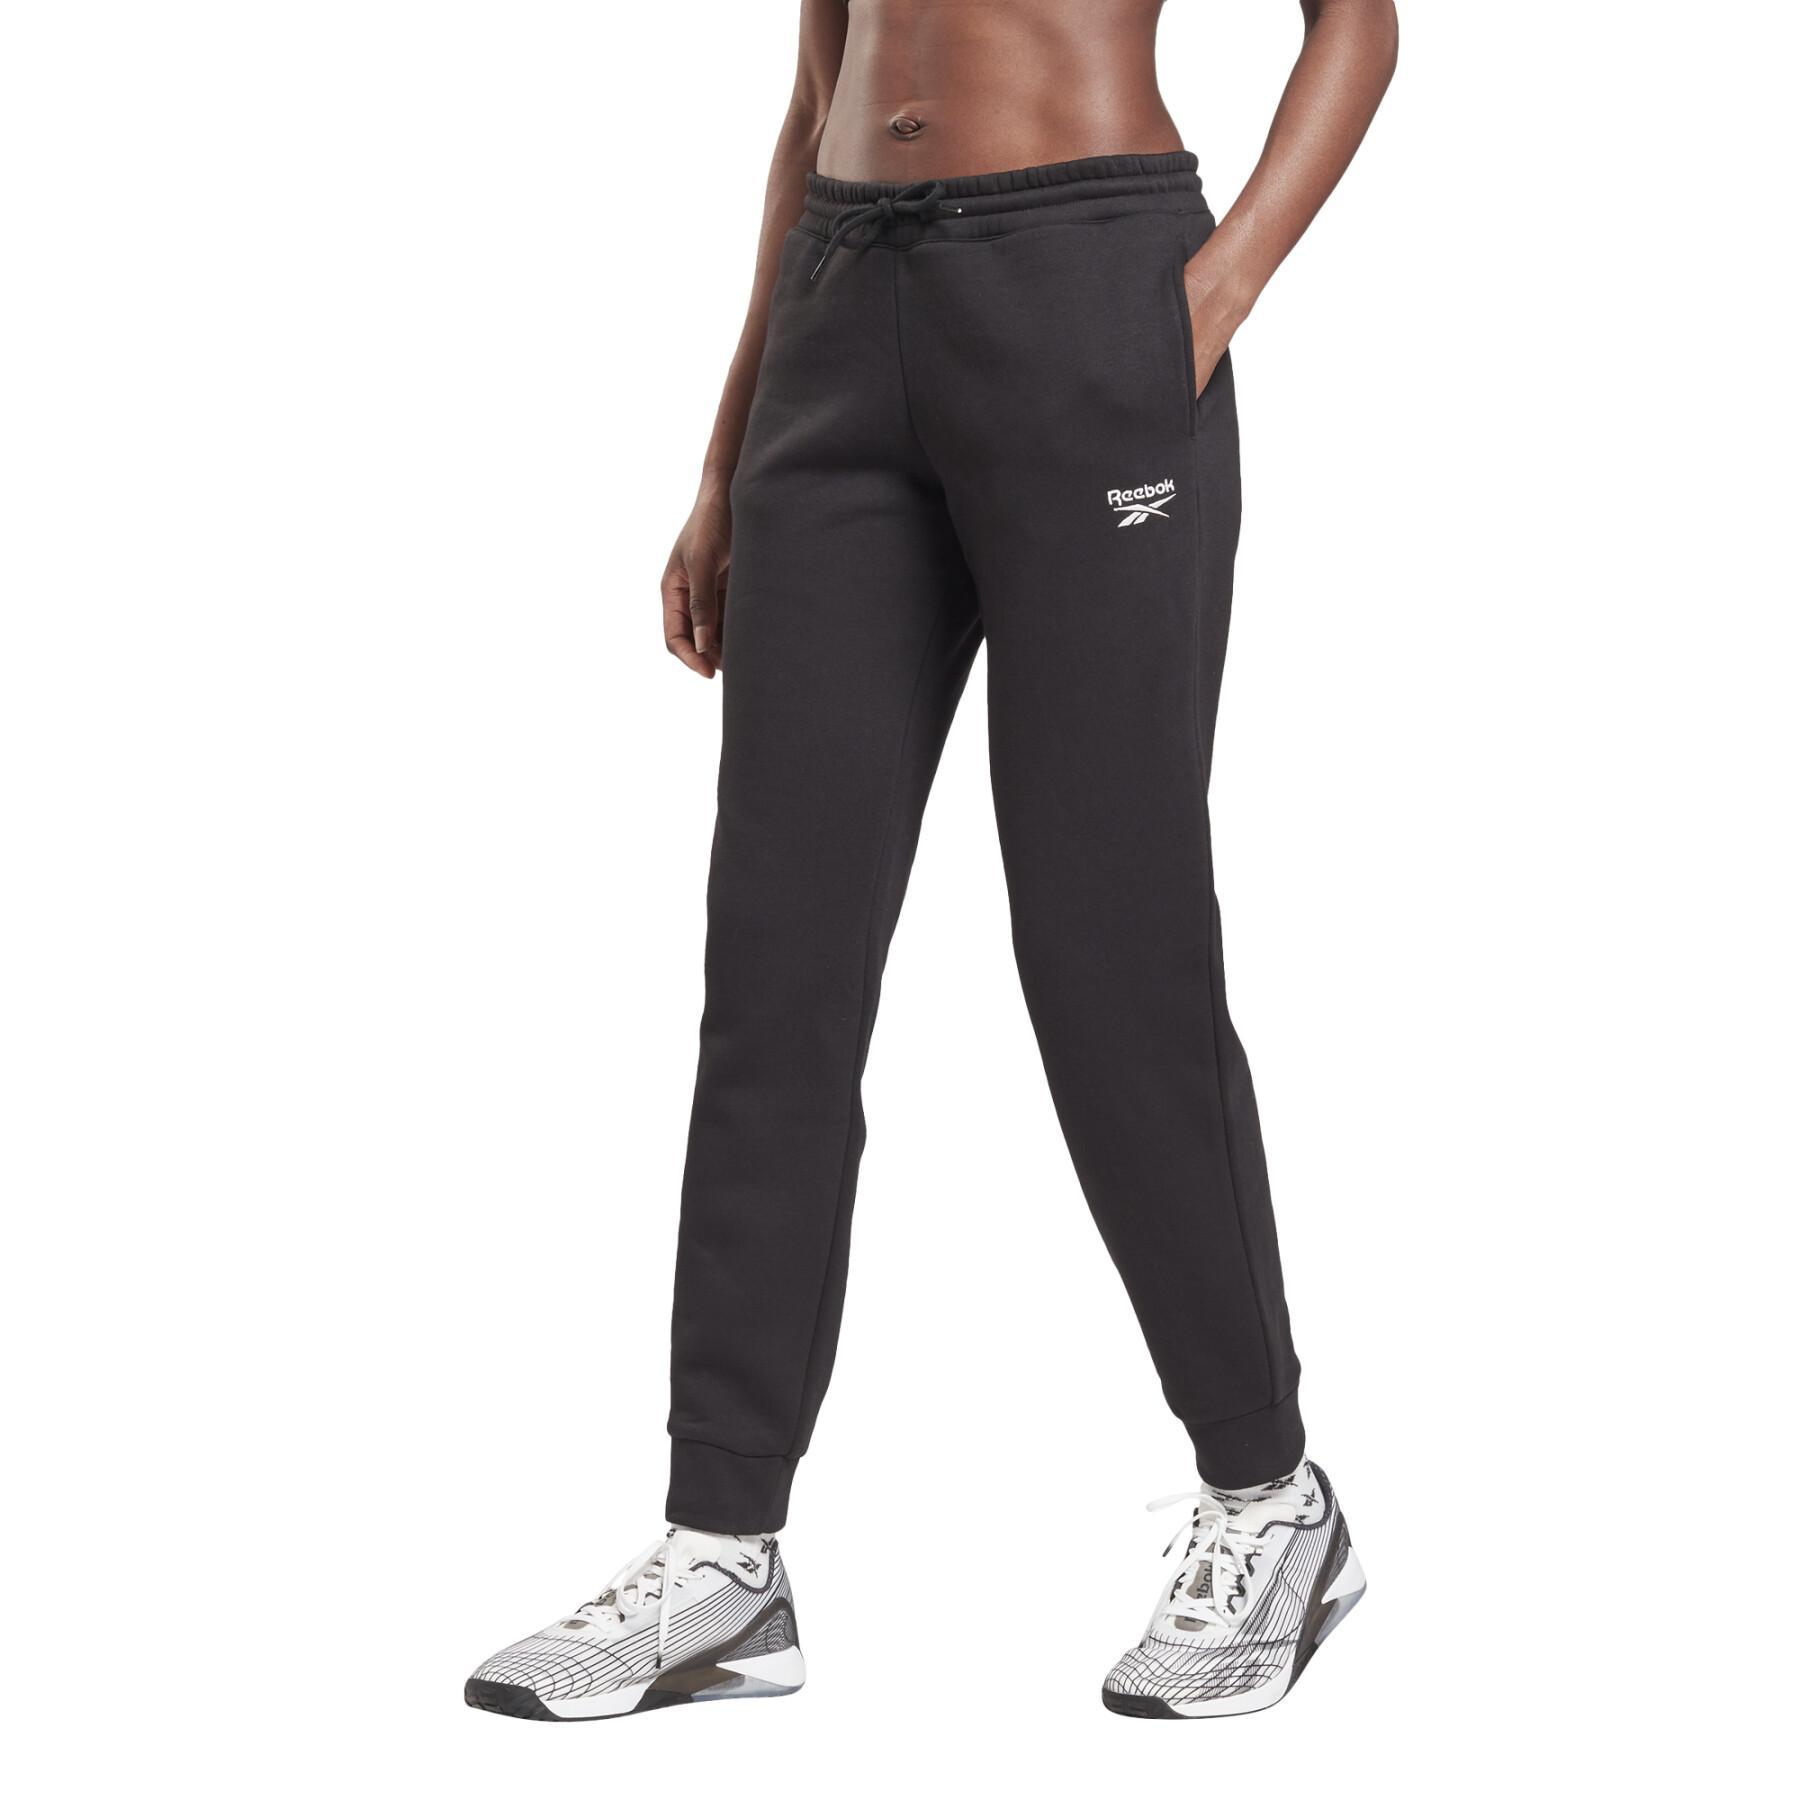 Women's jogging suit Reebok Identity